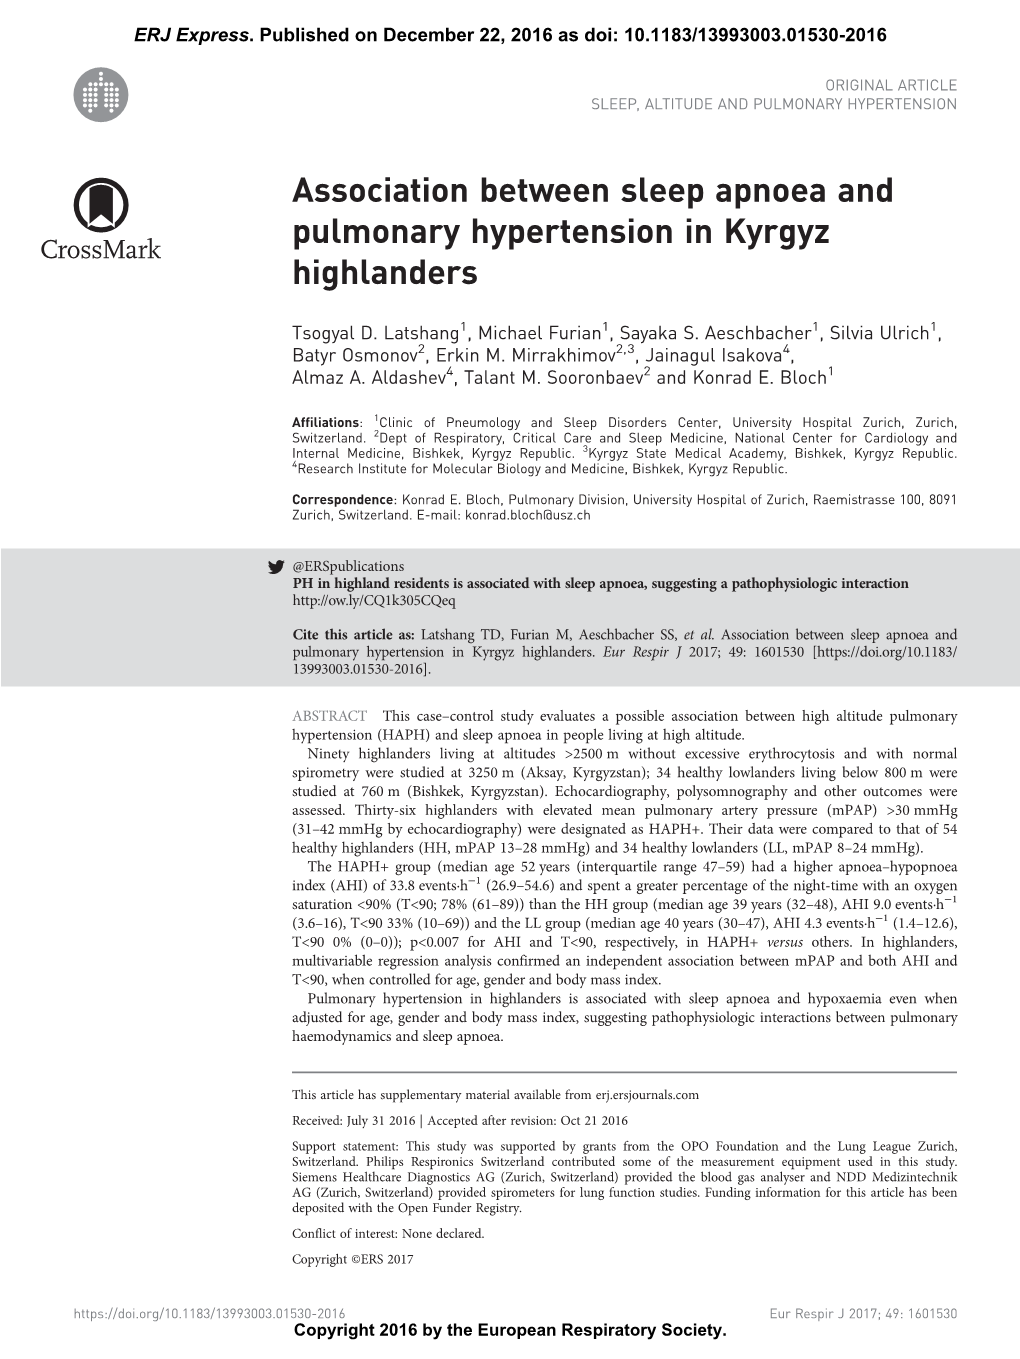 Association Between Sleep Apnoea and Pulmonary Hypertension in Kyrgyz Highlanders